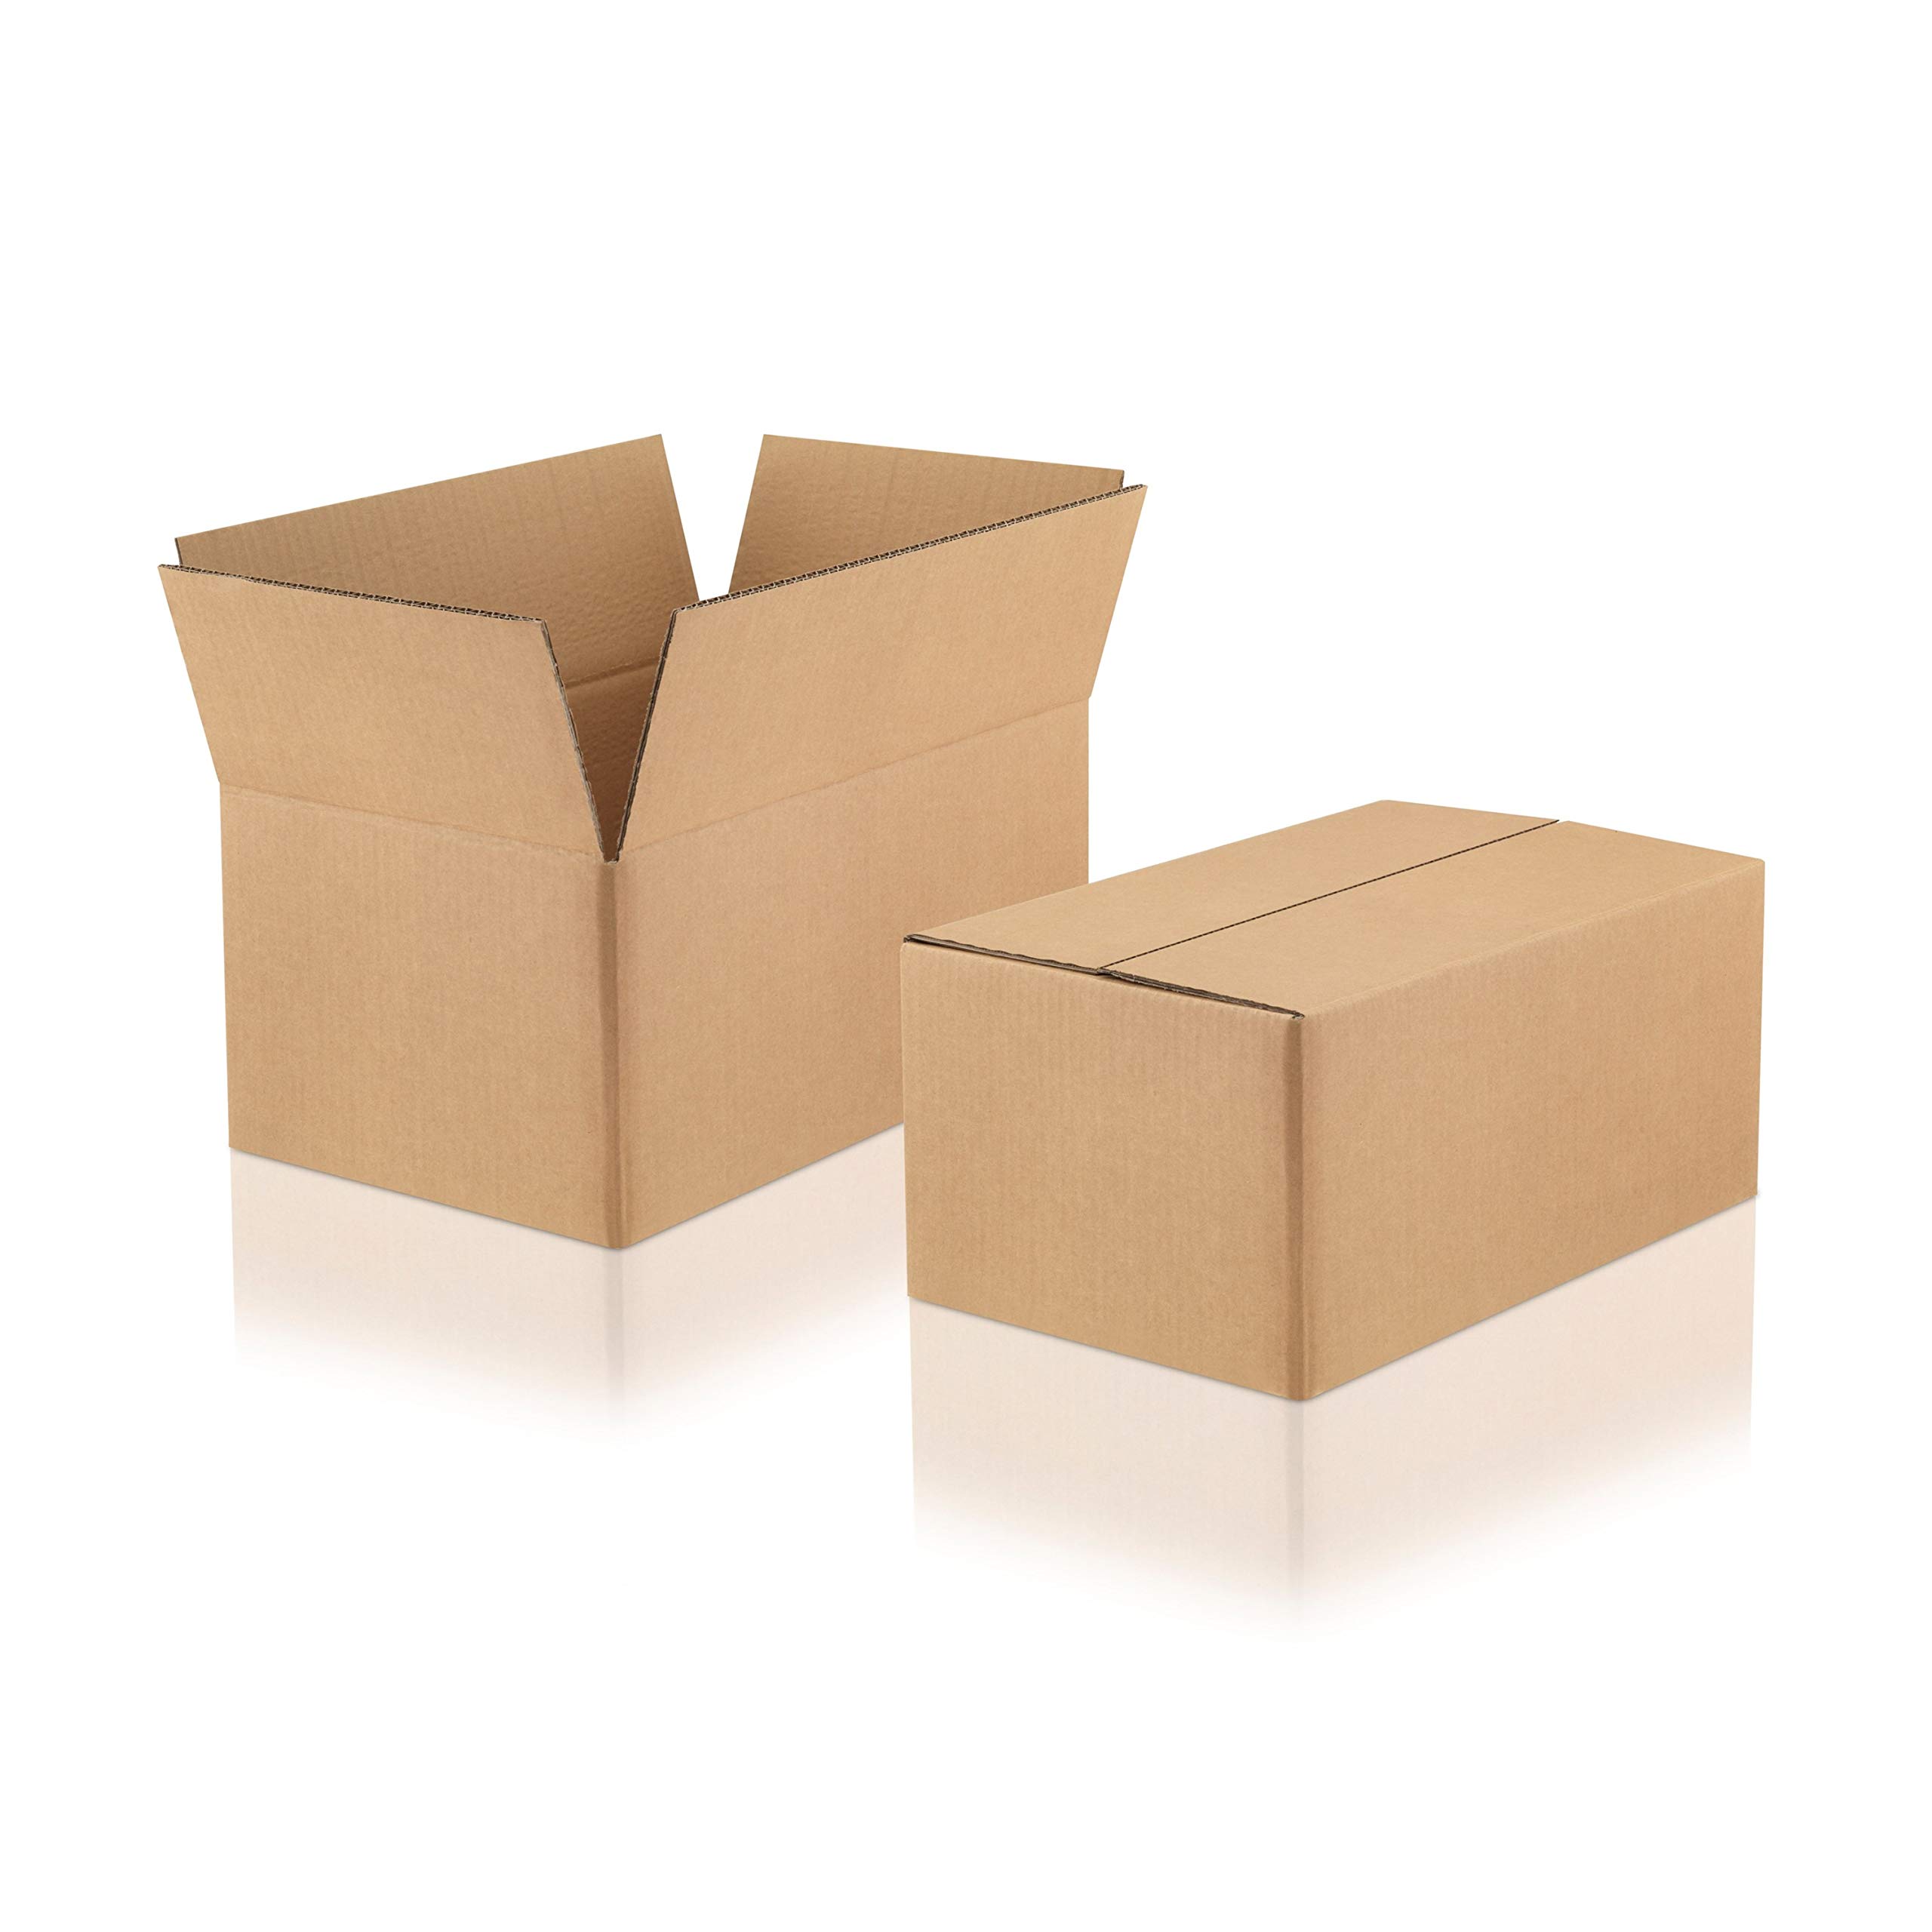 WPTrading - 60 Stück Versandkarton 2-wellig 180 x 180 x 130 mm Wellpappe (Nr. 2W-31A) Braun - Pappe Faltkarton für Warenversendung, Paket & Päckchen klein (S) - Karton Versandverpackung extra stabil